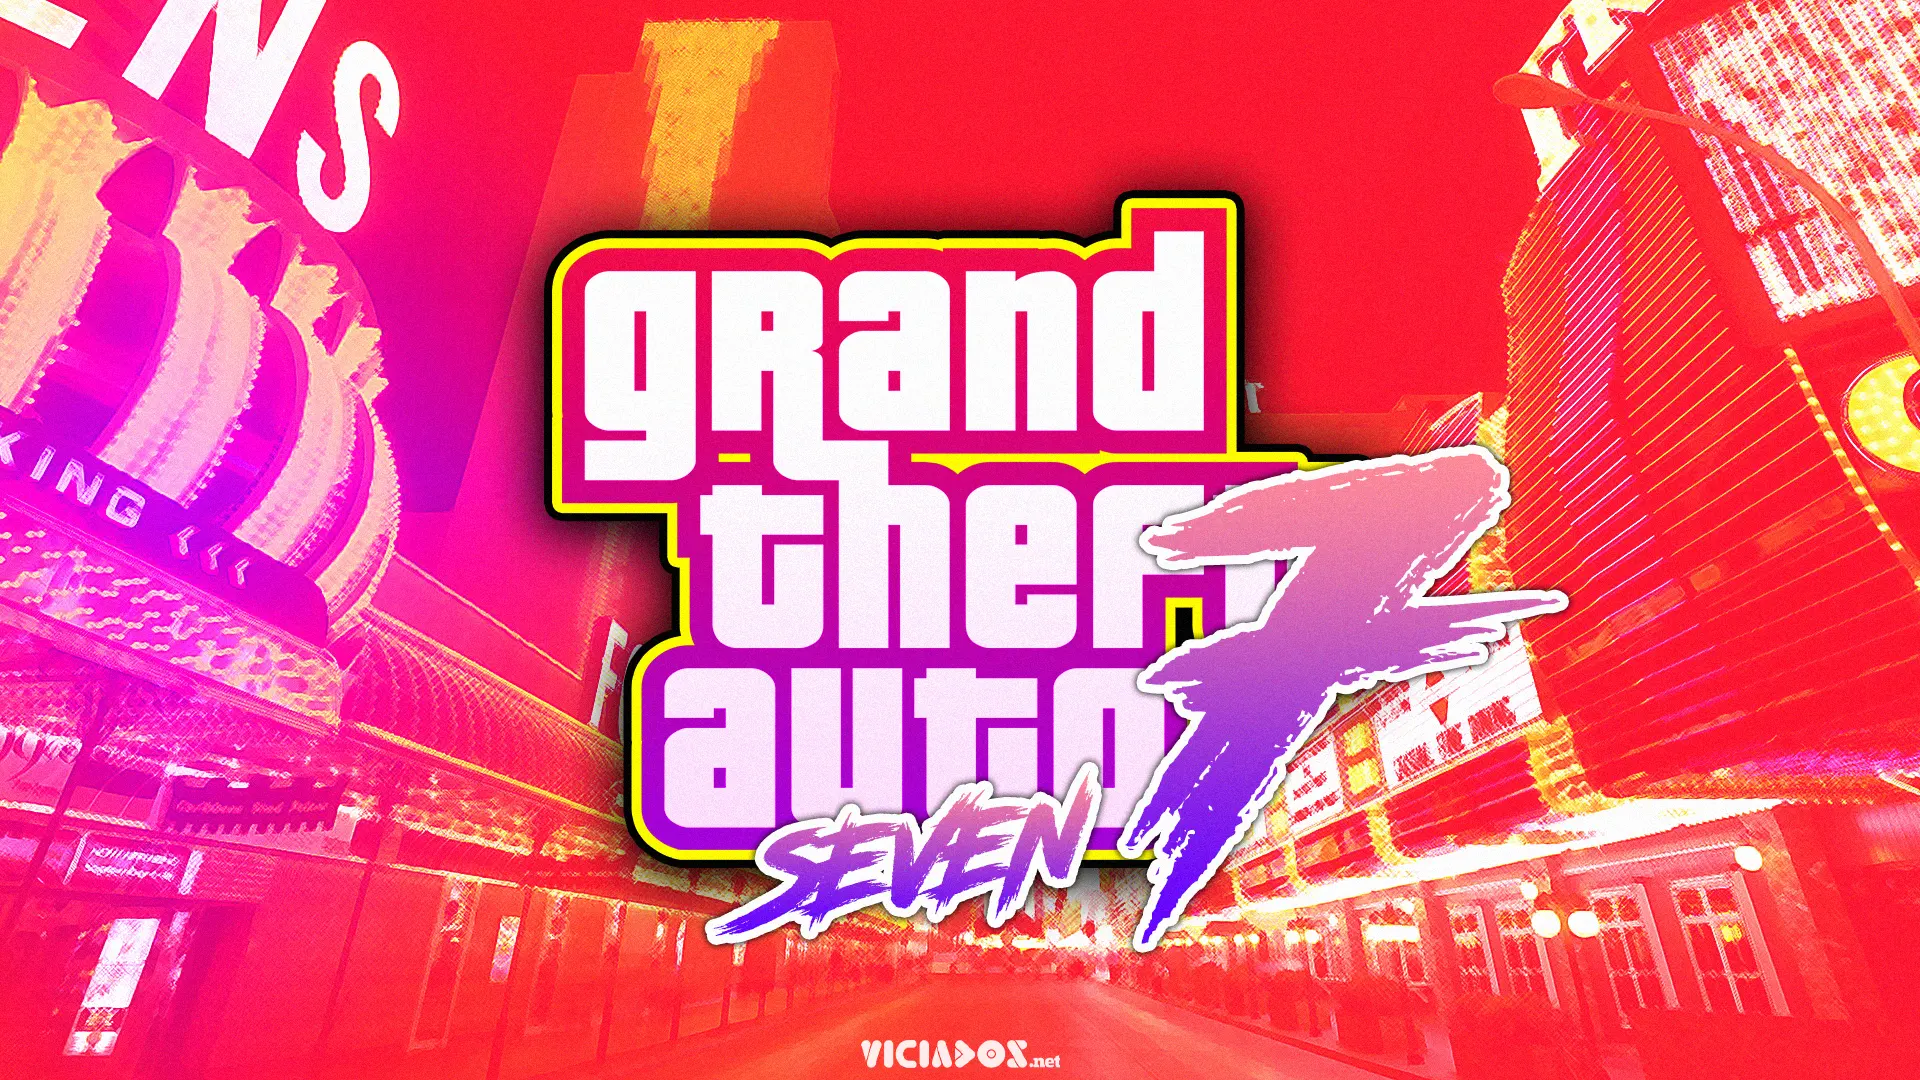 Quando Grand Theft Auto VII (GTA 7) será lançado? Entenda! 1